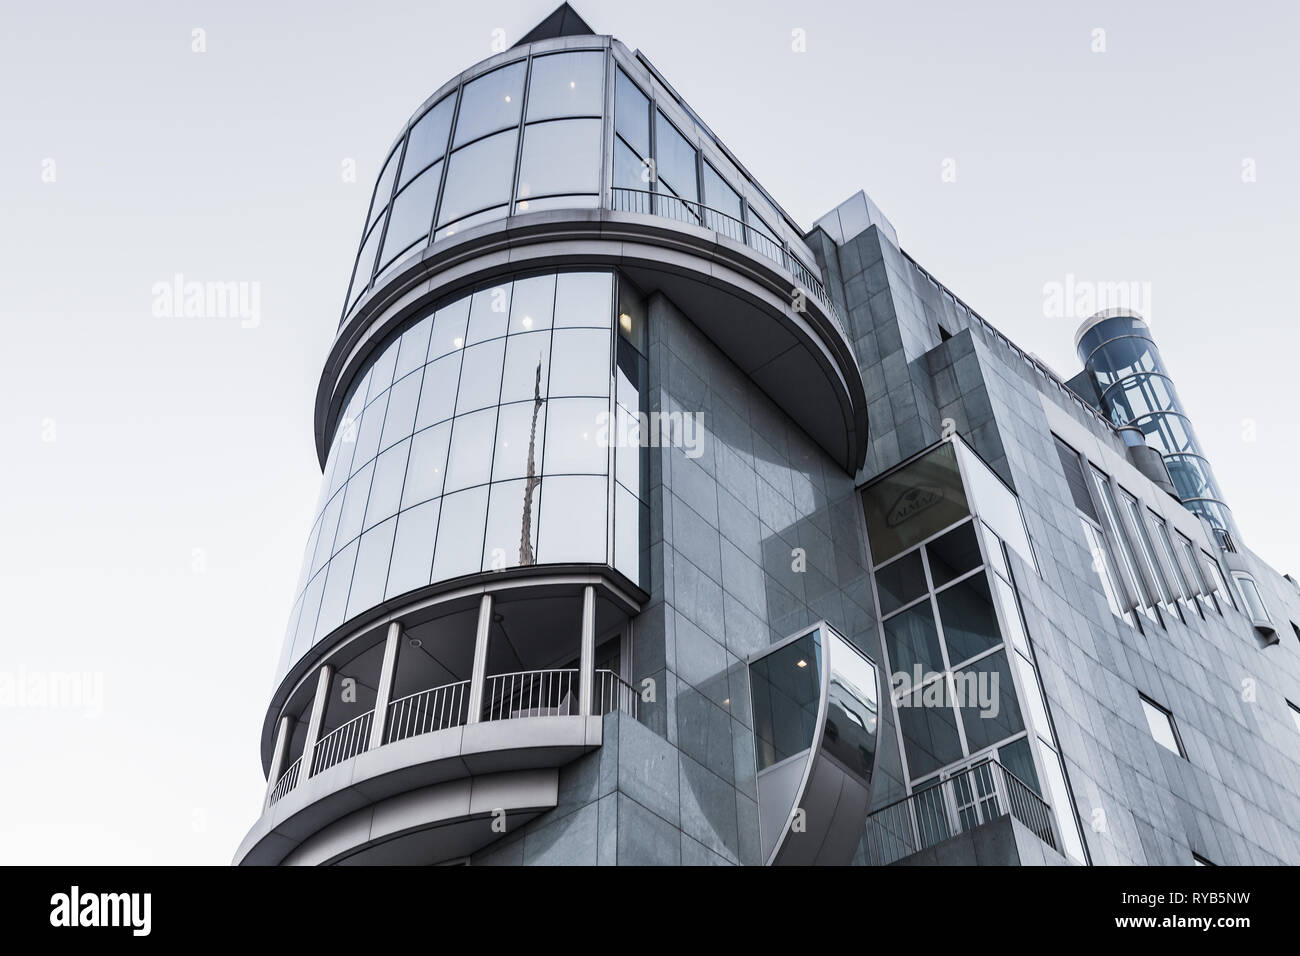 Vienne, Autriche - 2 novembre 2015 : extérieur de maison Haas, bâtiment moderne à Vienne, la place Stephansplatz. Conçu par l'architecte autrichien Hans Holl Banque D'Images